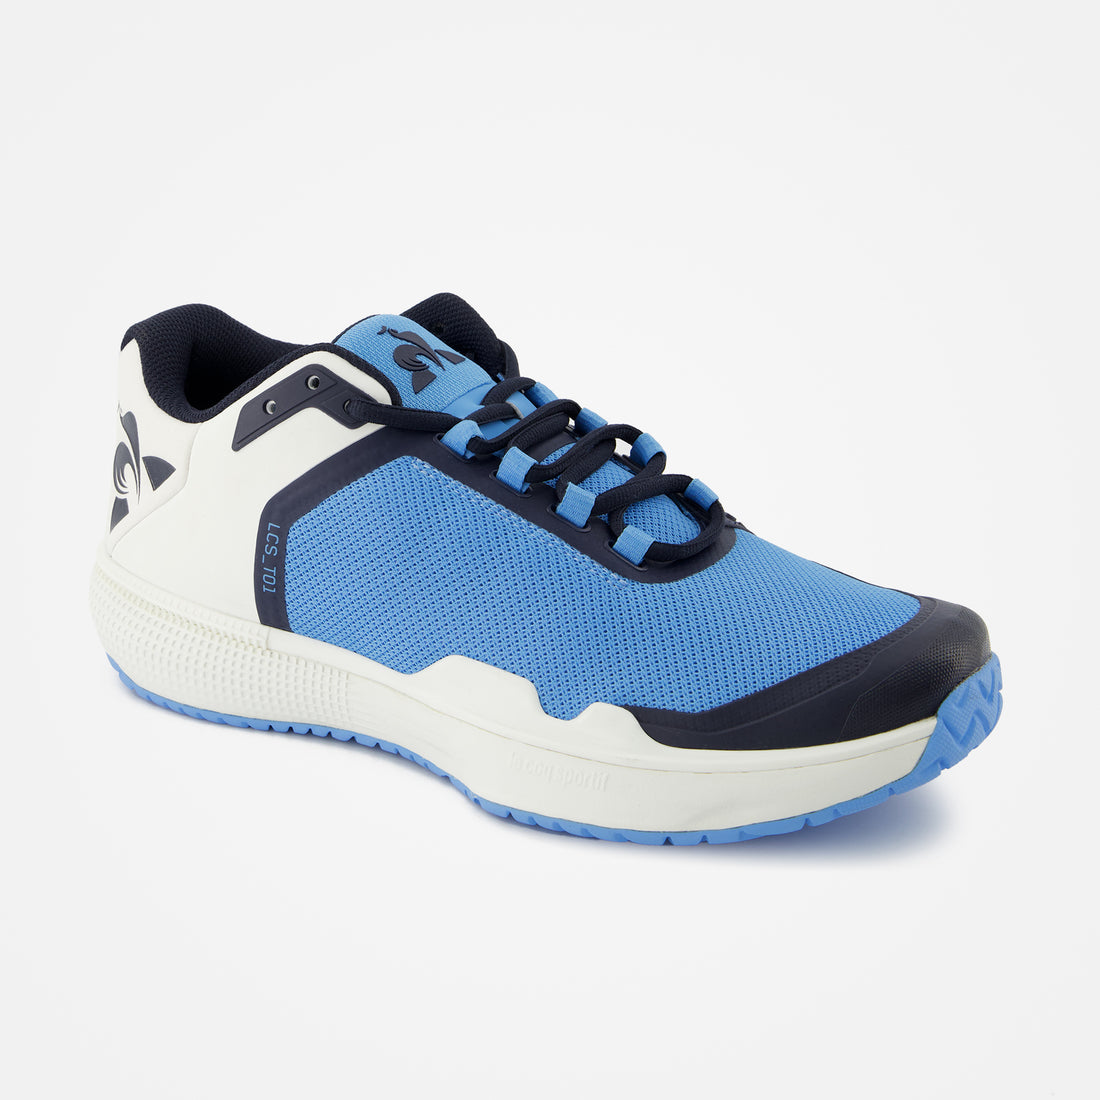 2320117-FUTUR LCS T01 ALL COURT bonnie blue | Chaussures de tennis FUTUR T01 ALL COURT Unisexe